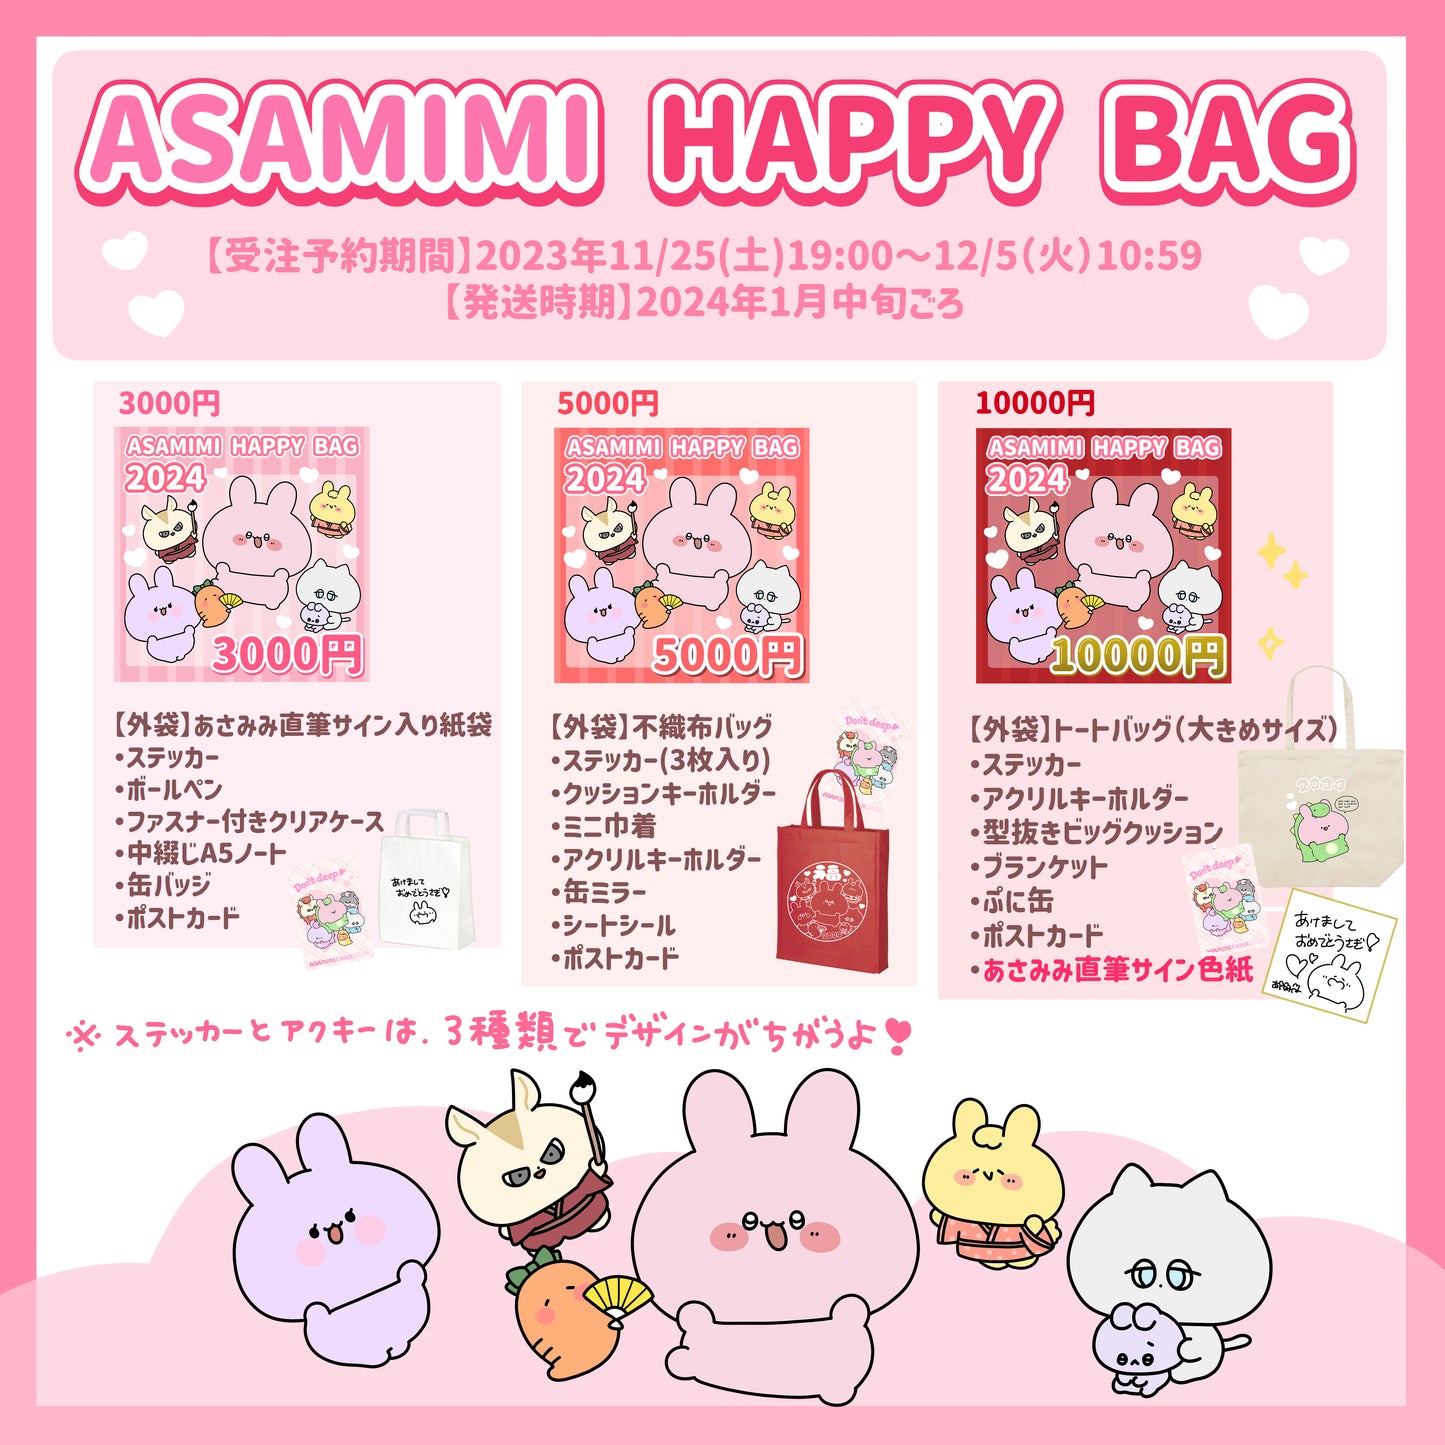 [Asamimi-chan] ASAMIMI HAPPY BAG 2024 (¥3,000) [Shipped in mid-January]